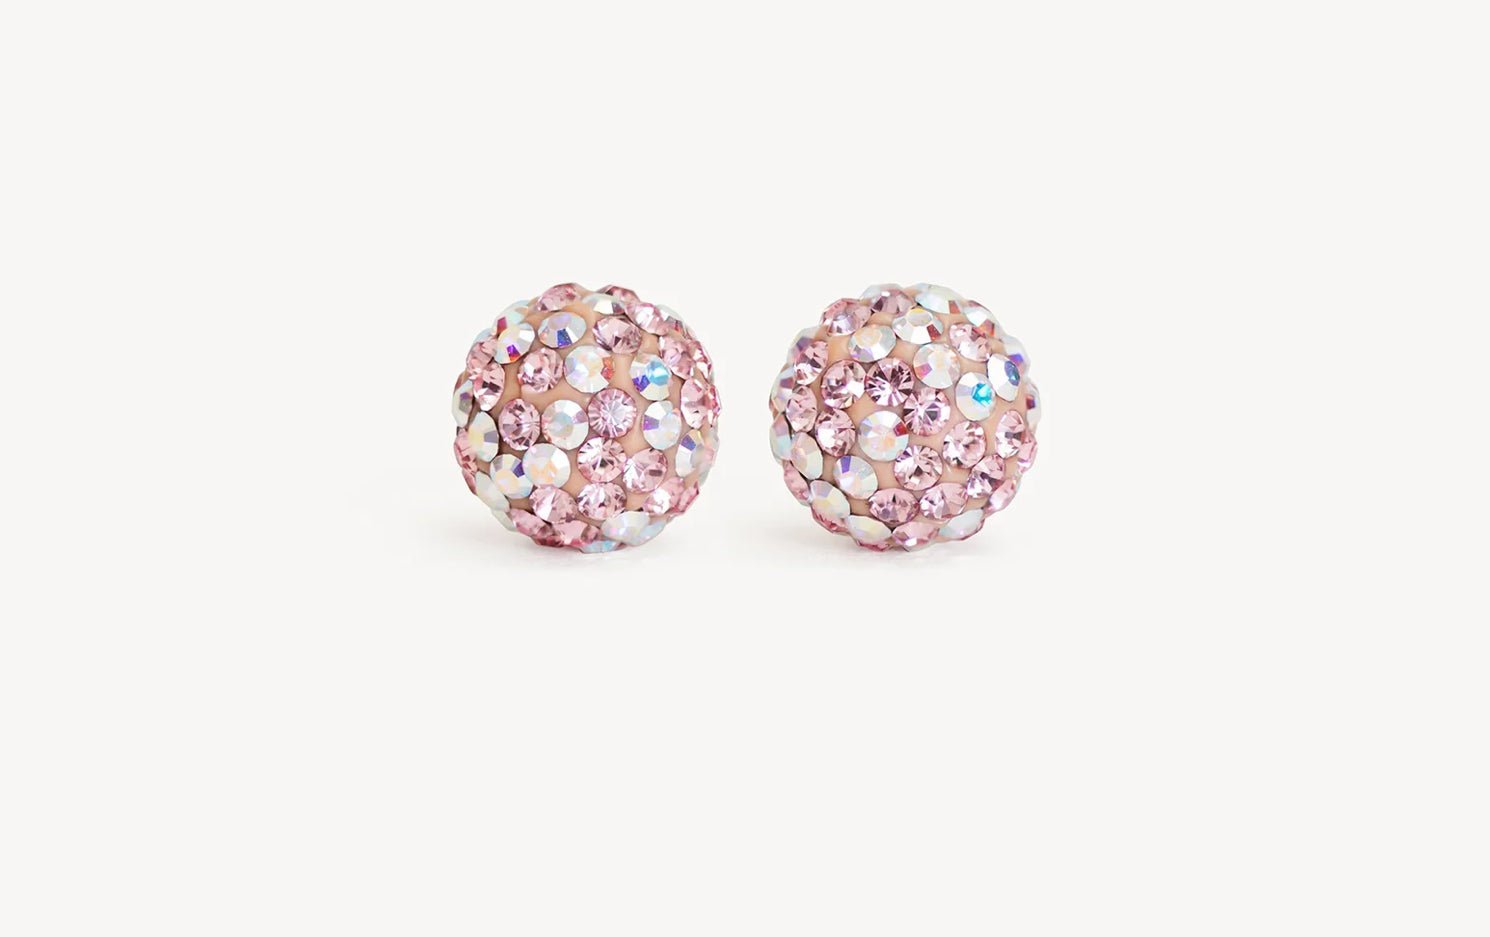 Poppy 10mm Sparkleball earrings - Blue Sky Fashions & Lingerie